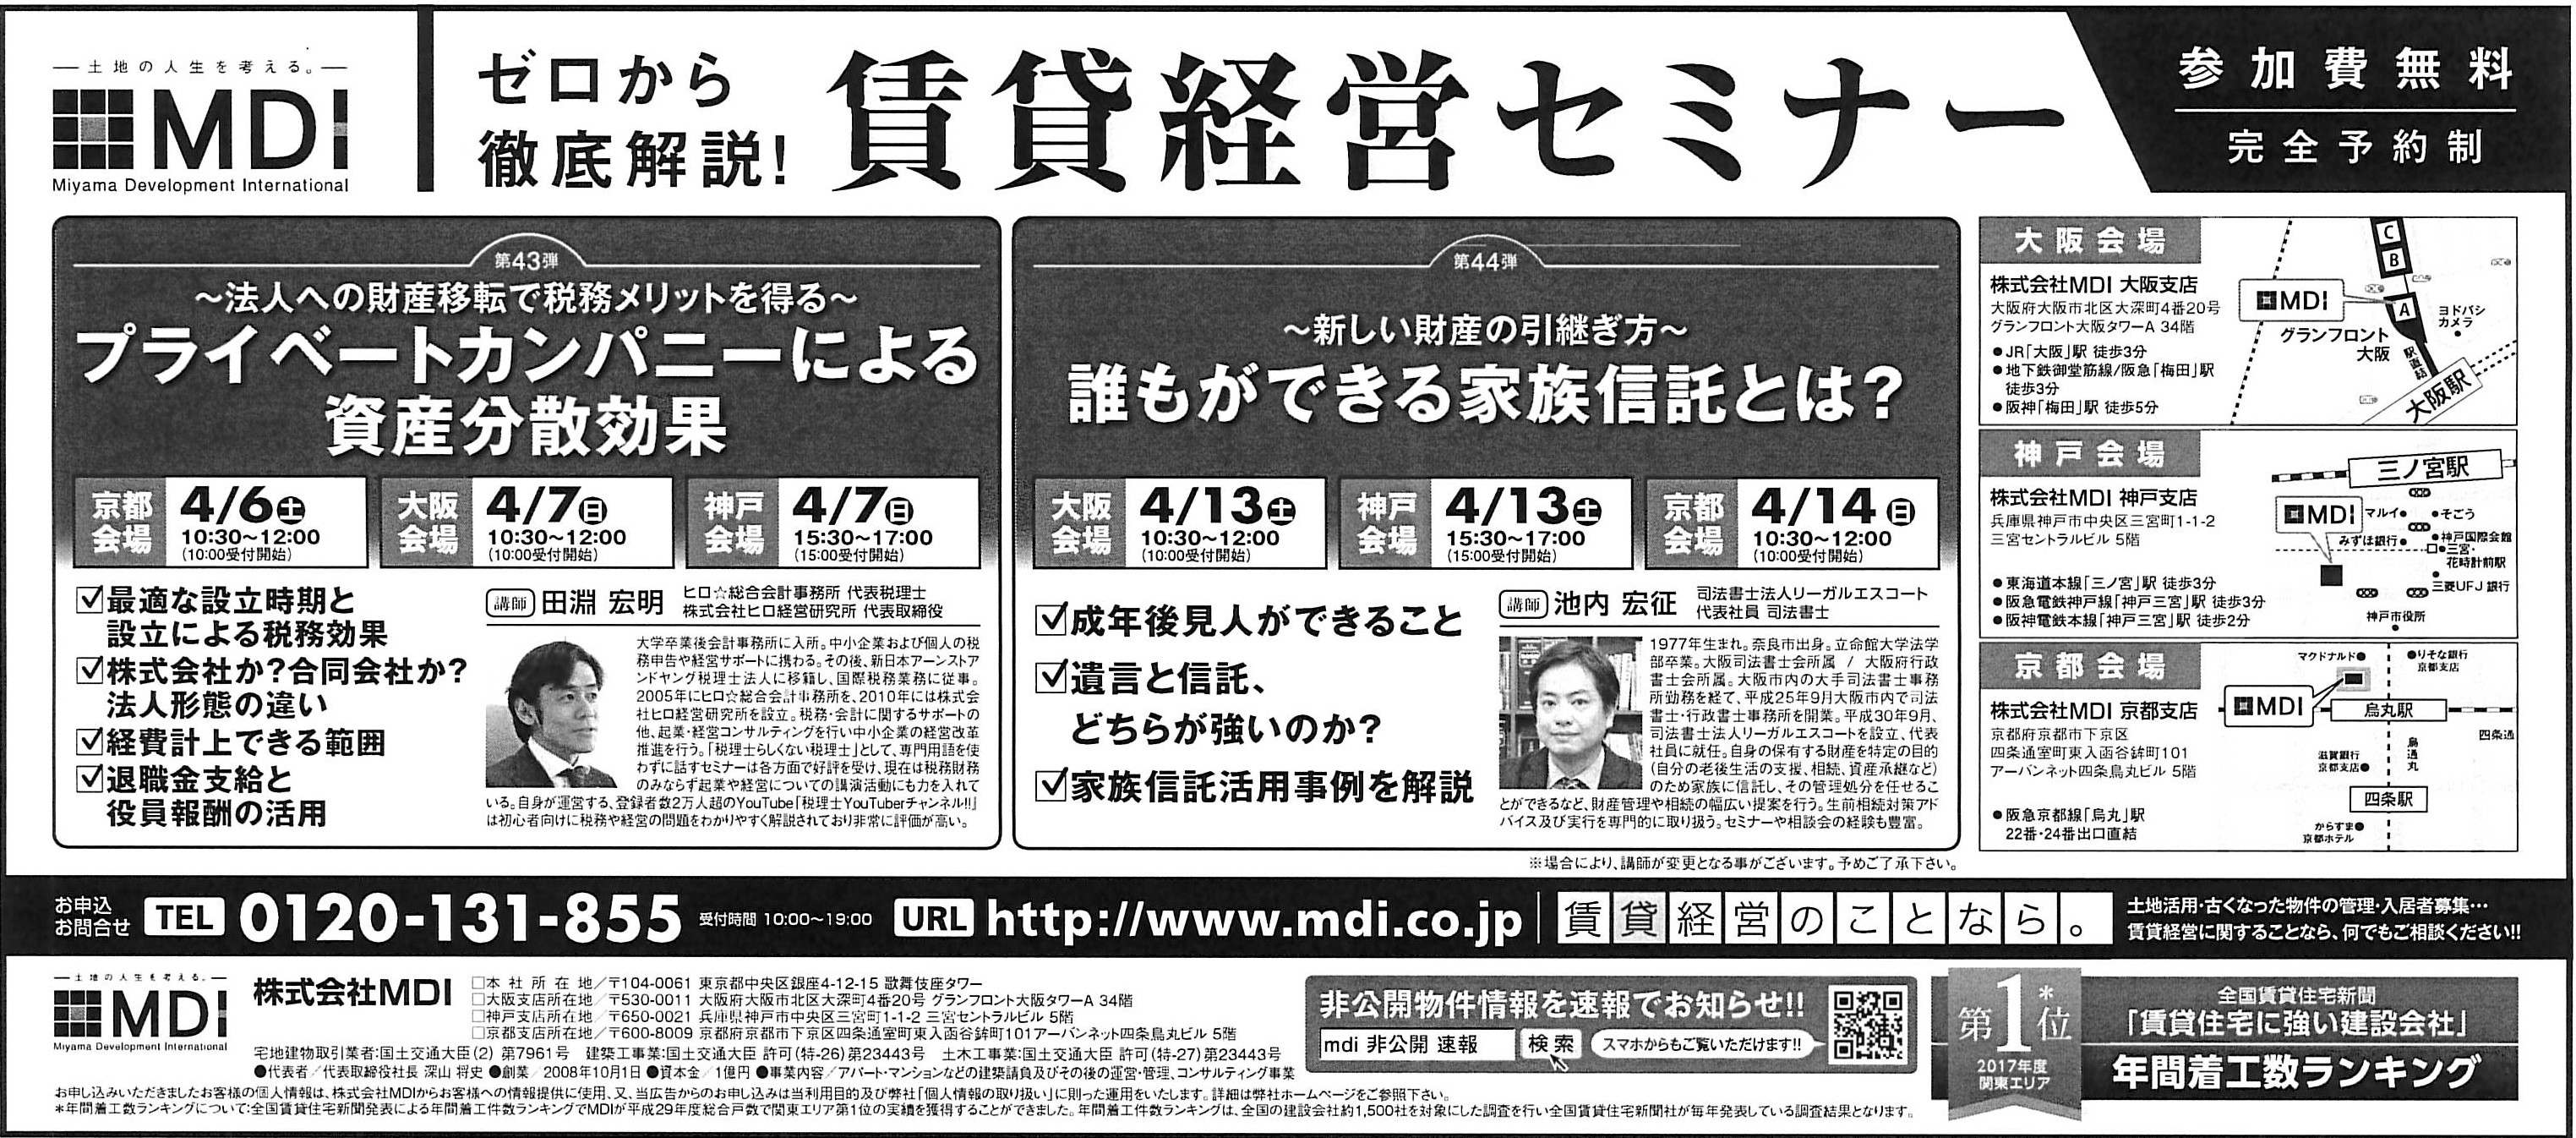 2019年3月16日・17日読売新聞、日経新聞に掲載されました。